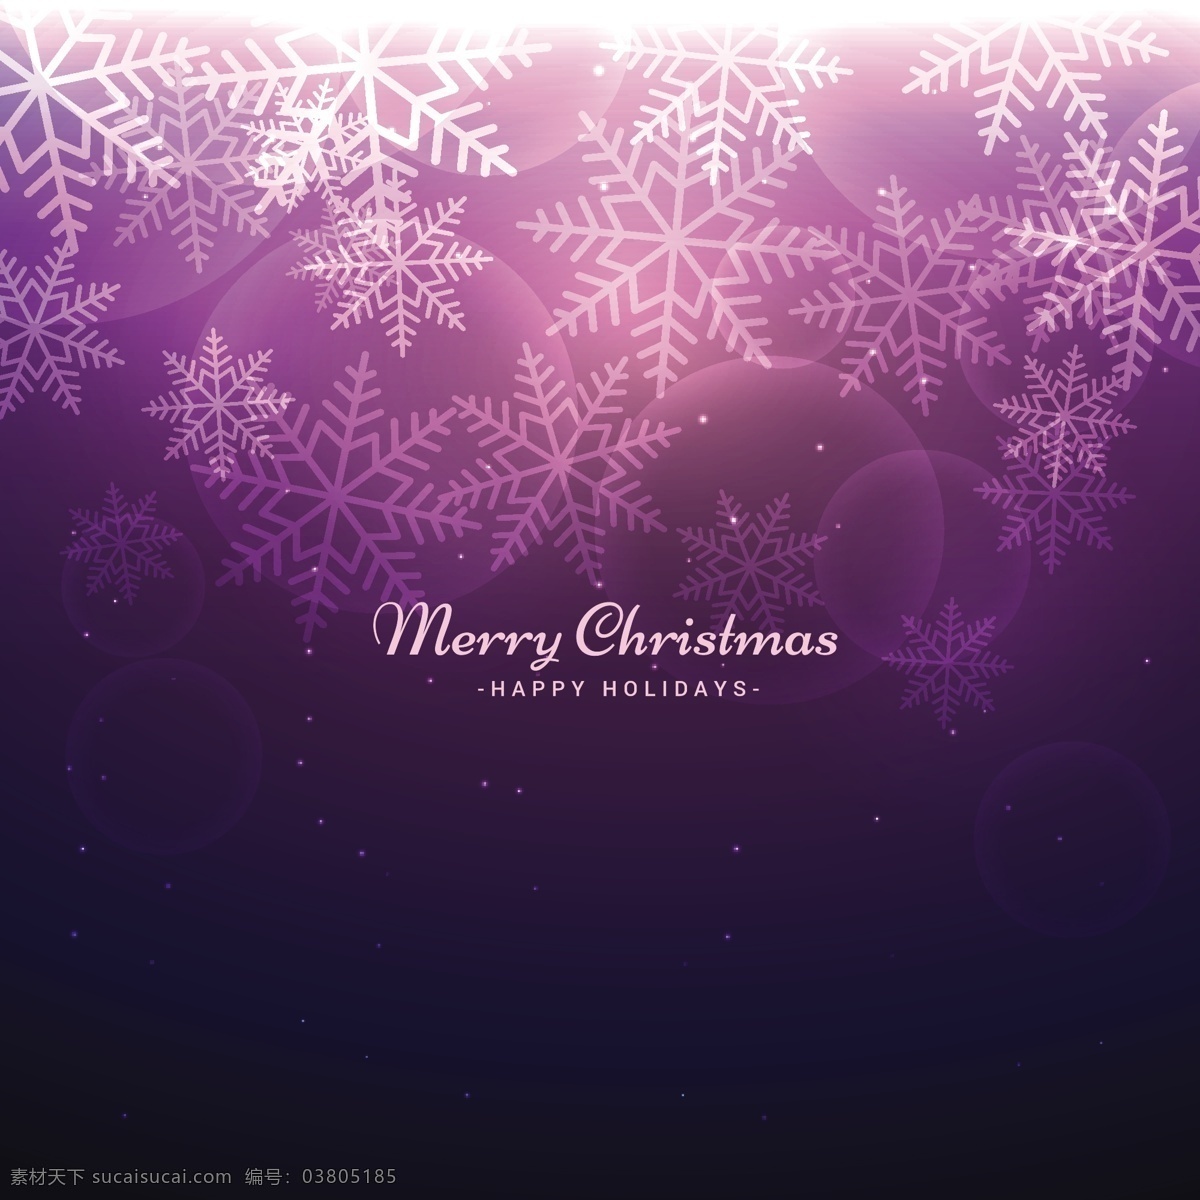 紫色 背景 虚化 雪花 圣诞 圣诞节 抽象 明星卡 几何 新的一年里 雪 冬天快乐 圣诞背景 圣诞卡 庆祝 节日 冰 黑色